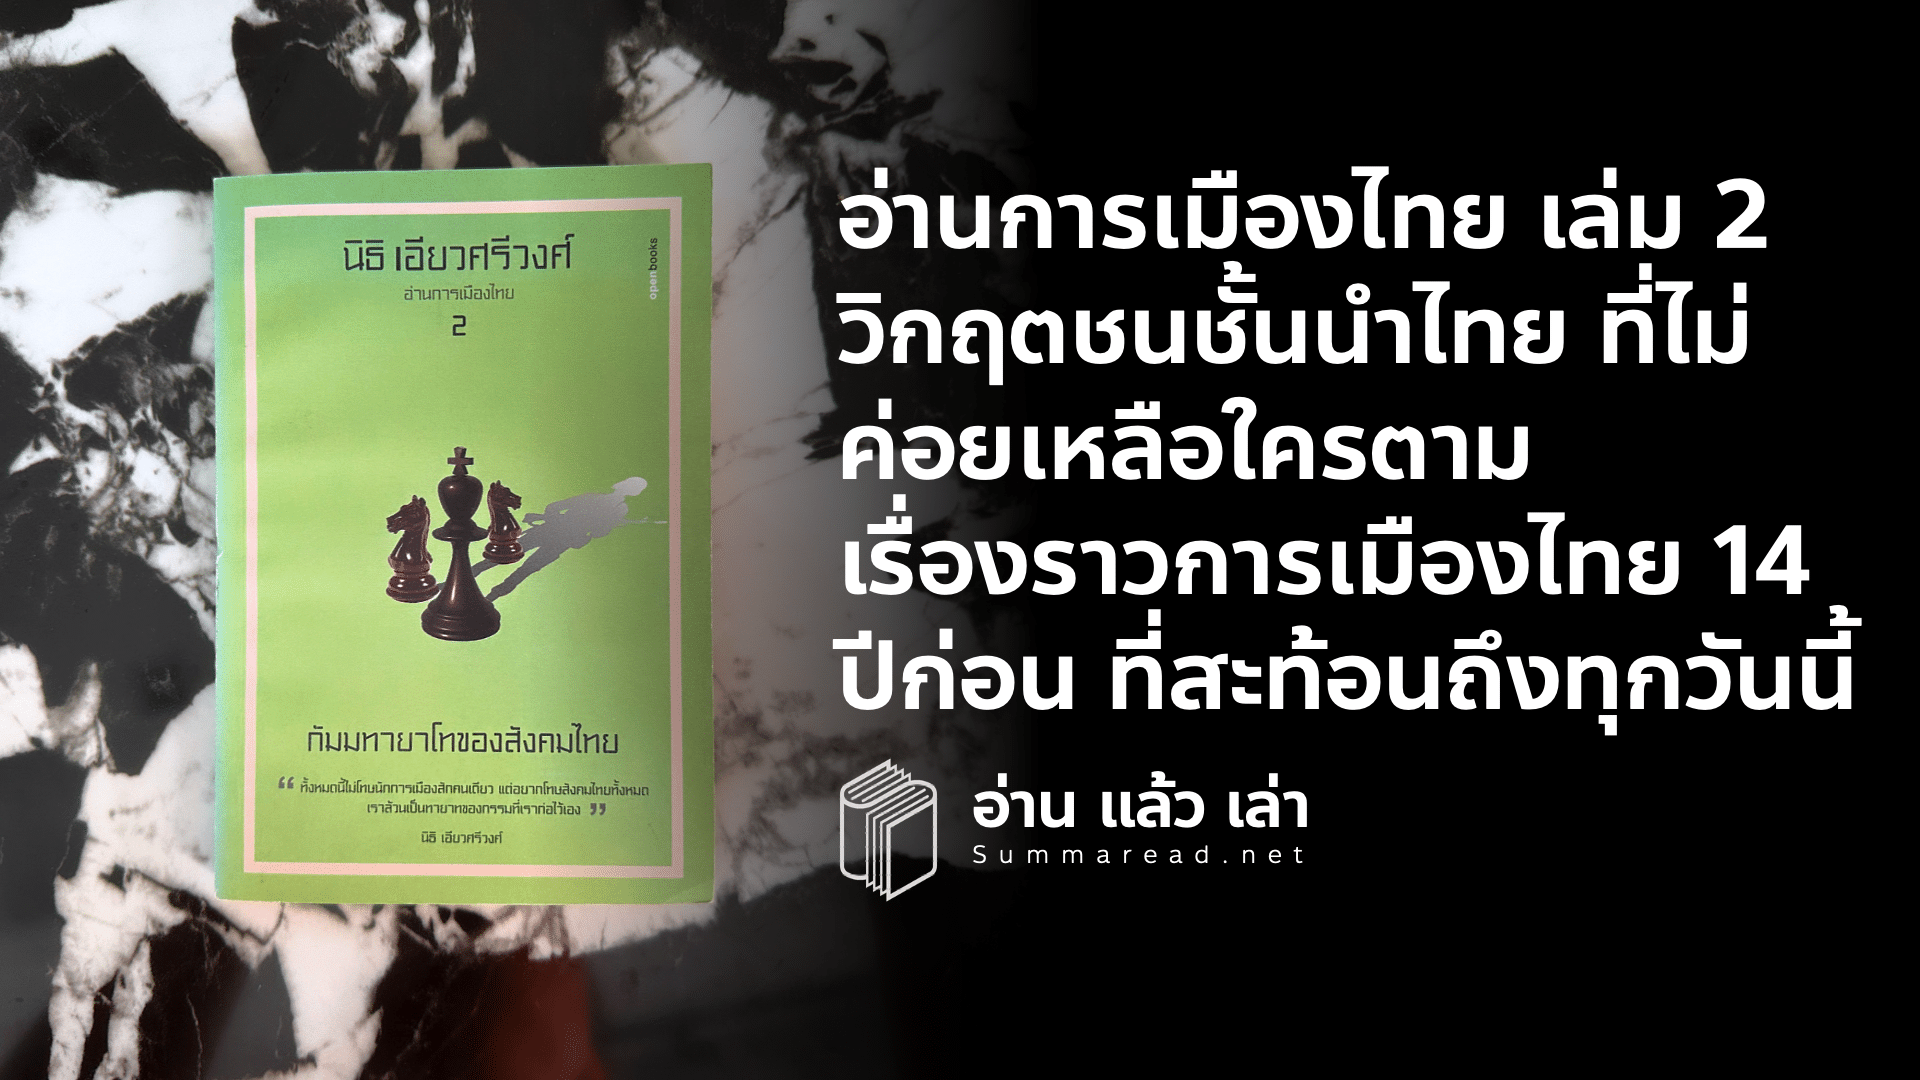 สรุปหนังสืออ่านการเมืองไทย เล่ม 2 กัมมทายาโทของสังคมไทย นิธิ เอียวศรีวงศ์ เขียน สำนักพิมพ์ openbooks 14 ปีผ่านไปการเมืองไทยเปลี่ยนไปหรือไม่